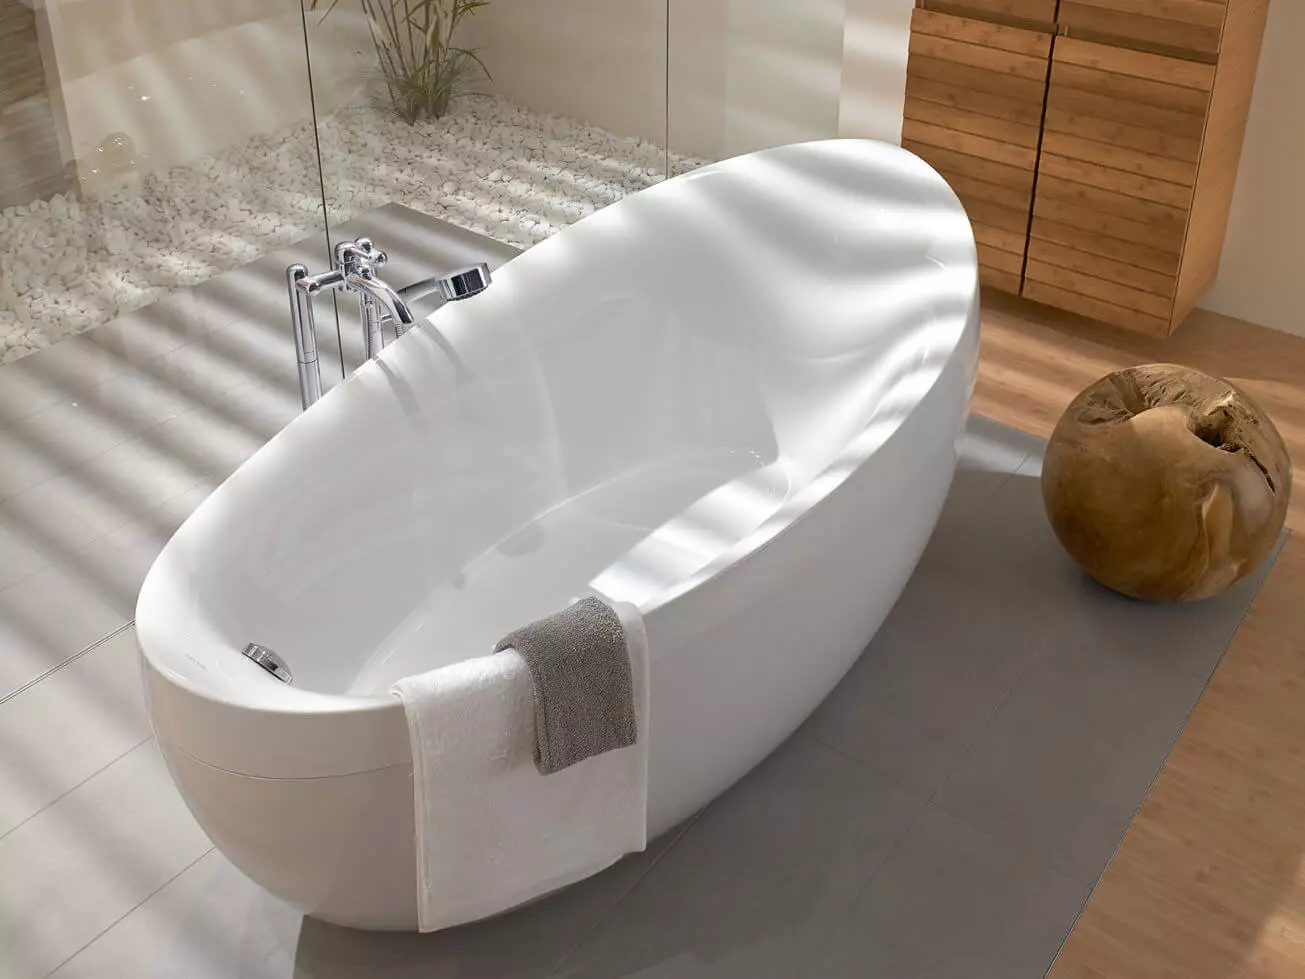 אמבטיה אשר חומר לבחור בשנת 2019?